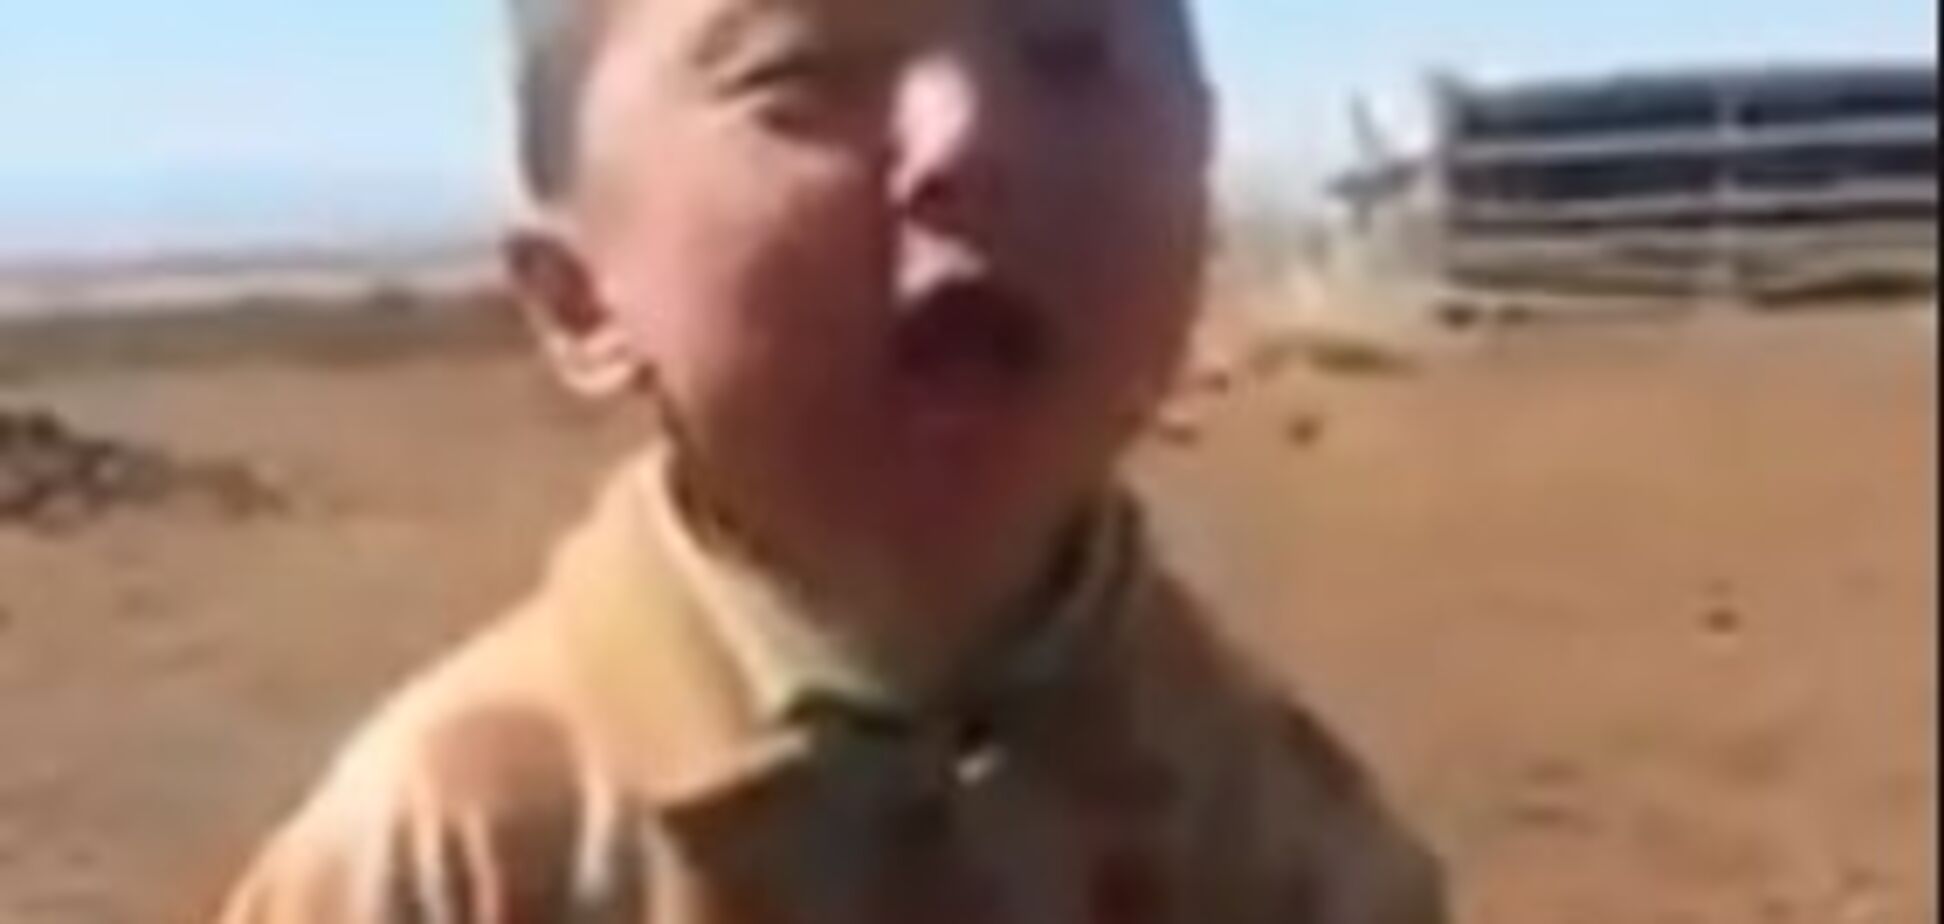 Більше мільйона переглядів: пісня дитини з Монголії б'є рекорди в мережі